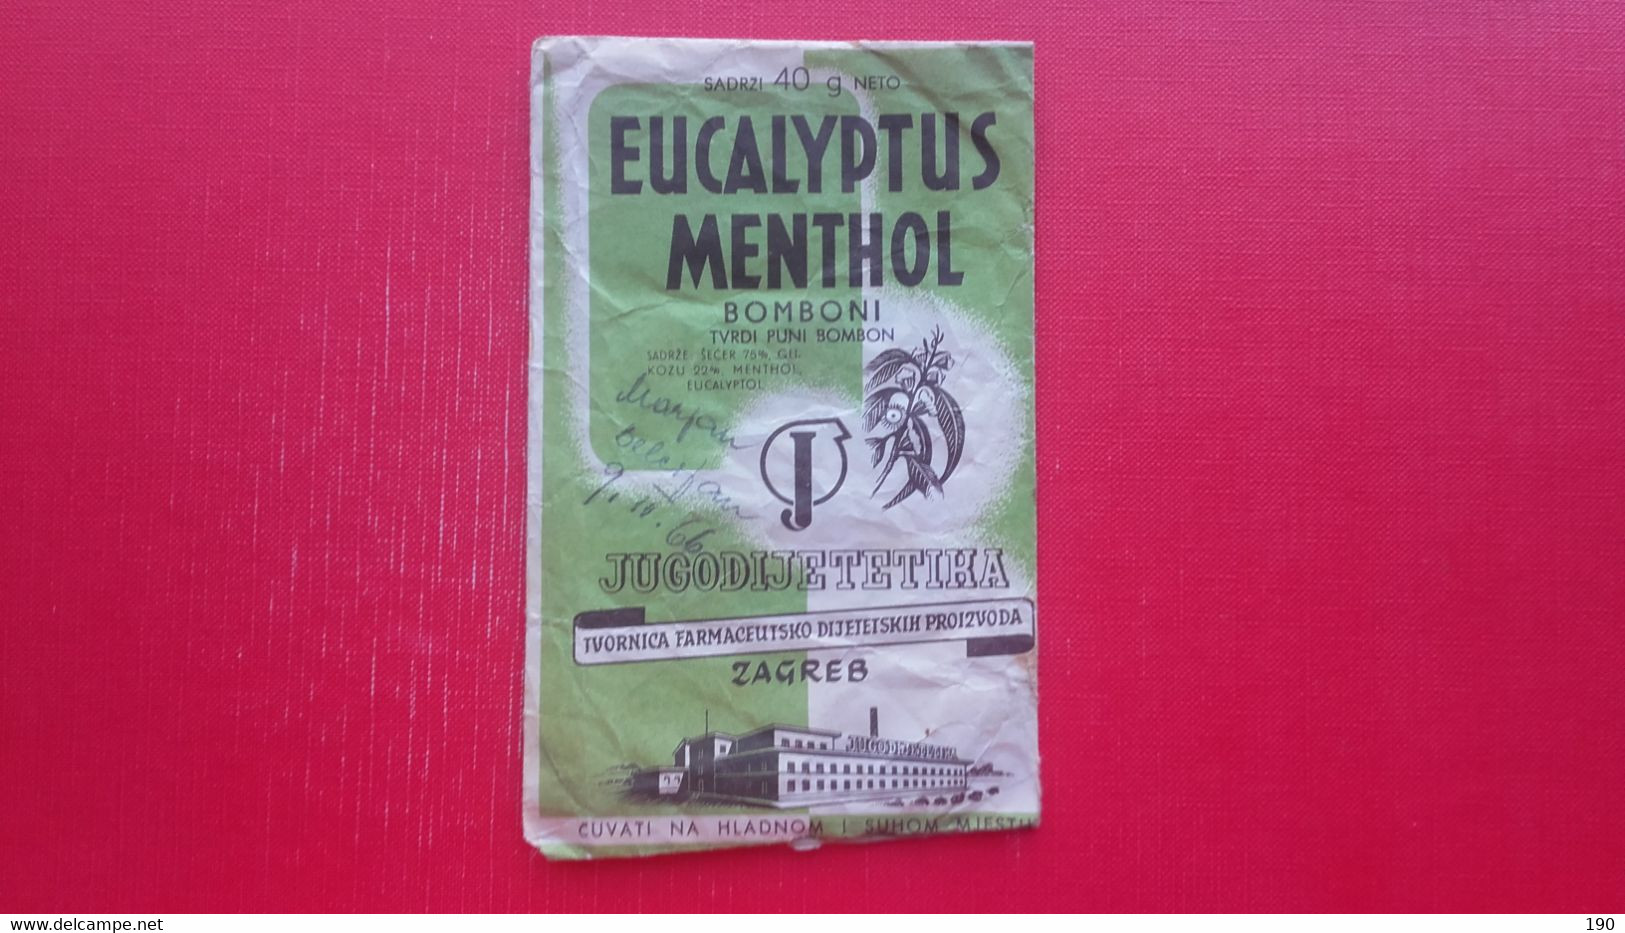 Paper Bag.Eucalyptus Menthol Bomboni.Jugodijetetika Zagreb - Supplies And Equipment